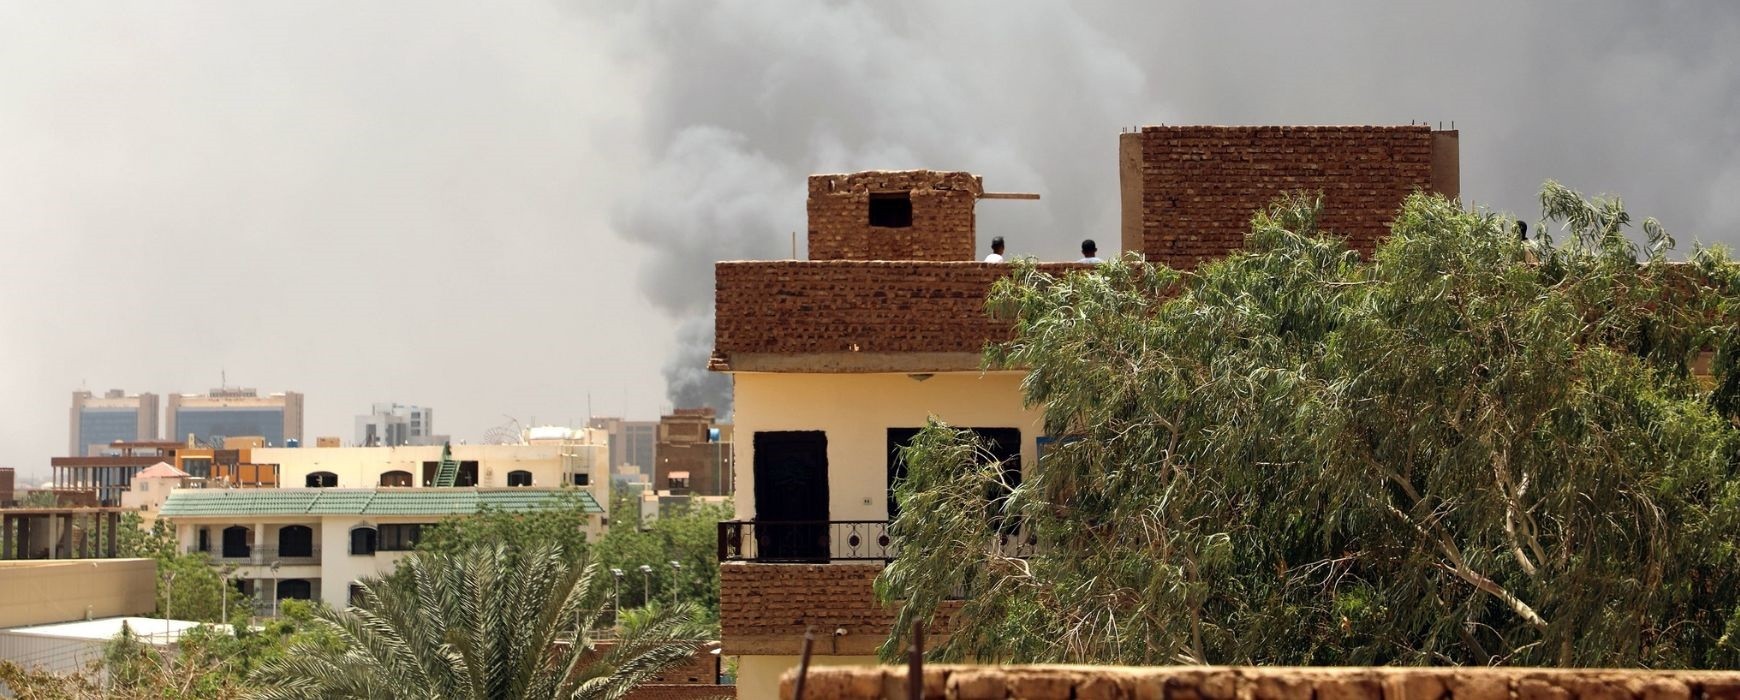 Εμφύλιος στο Σουδάν: Τουλάχιστον 56 νεκροί και 600 τραυματίες στις μάχες – Έντονη ανησυχία στη διεθνή κοινότητα (Videos)